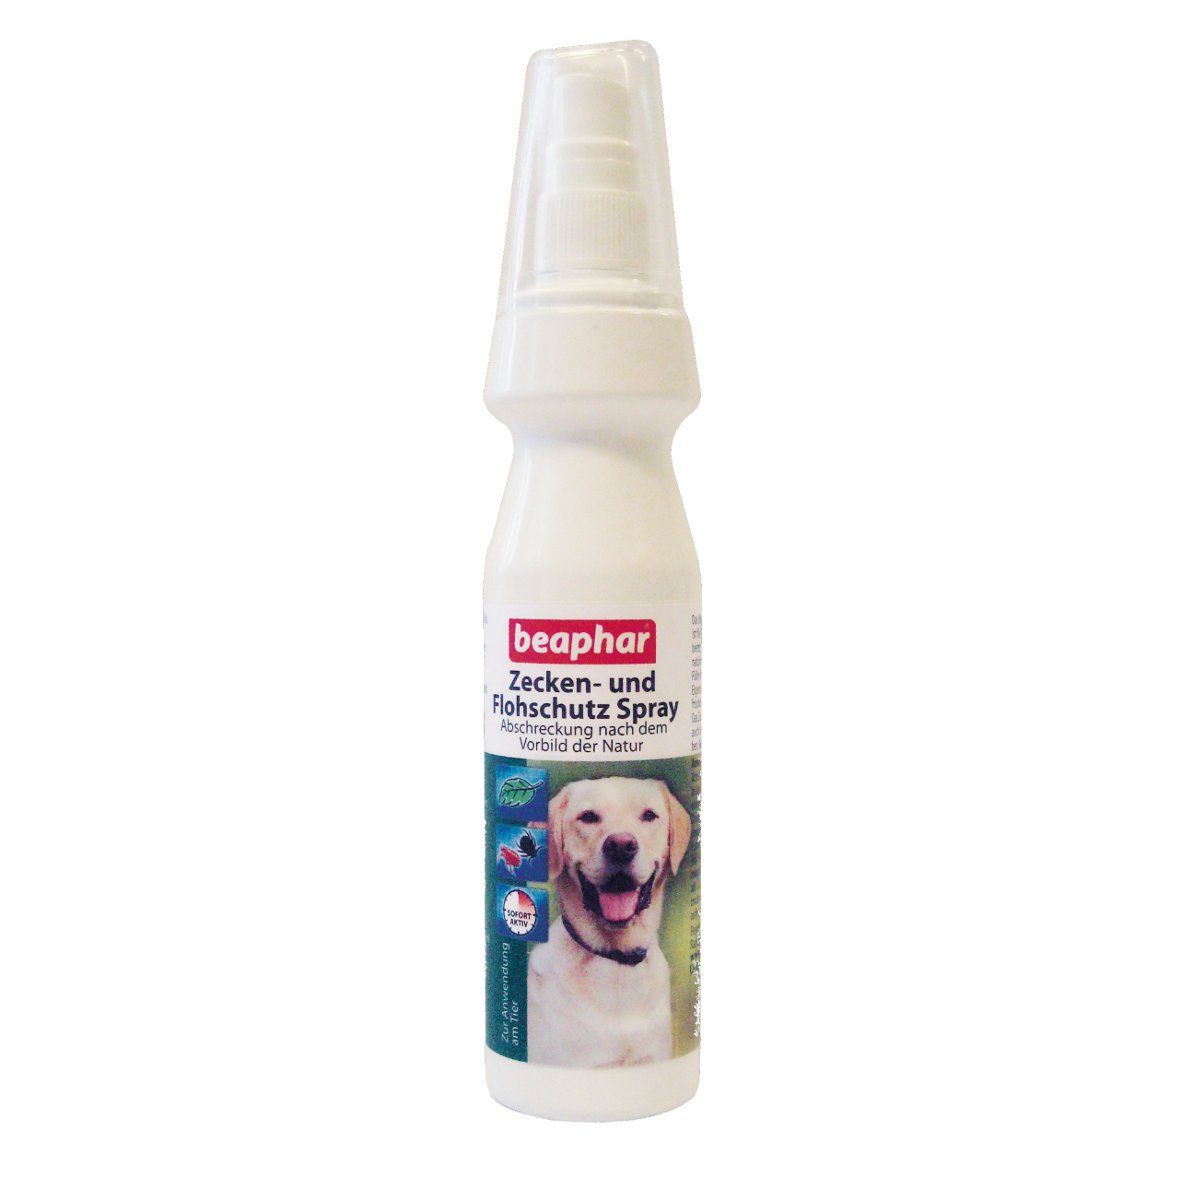 Beaphar - Zecken- und Flohschutz Spray für Hunde